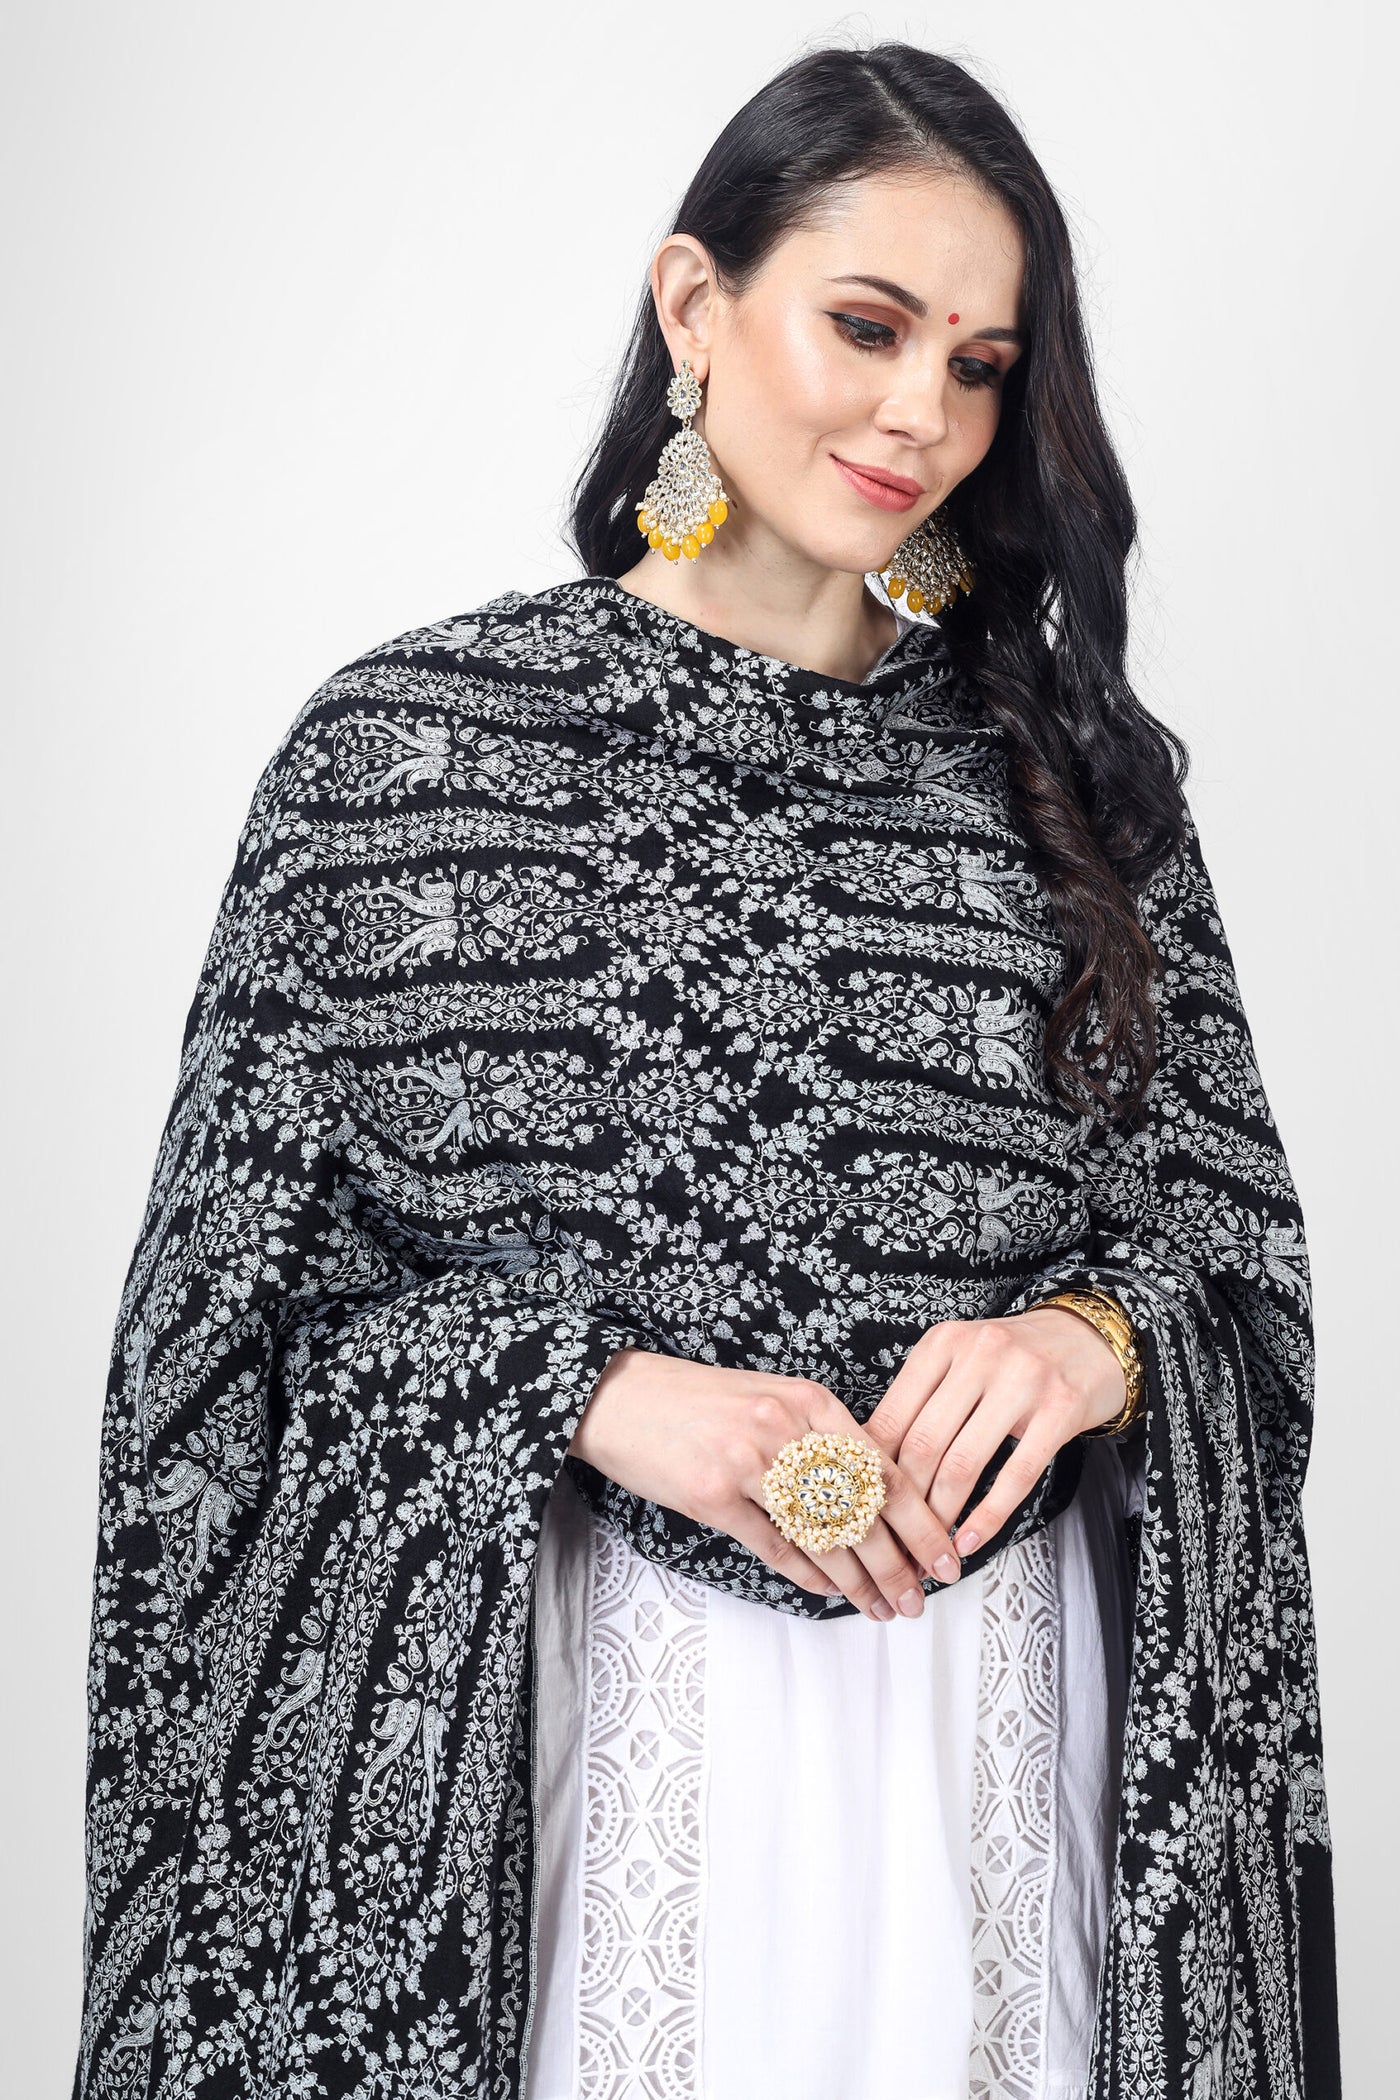 PASHMINA SHAWL - Black Pashmina Mehraab sozni Jama shawl